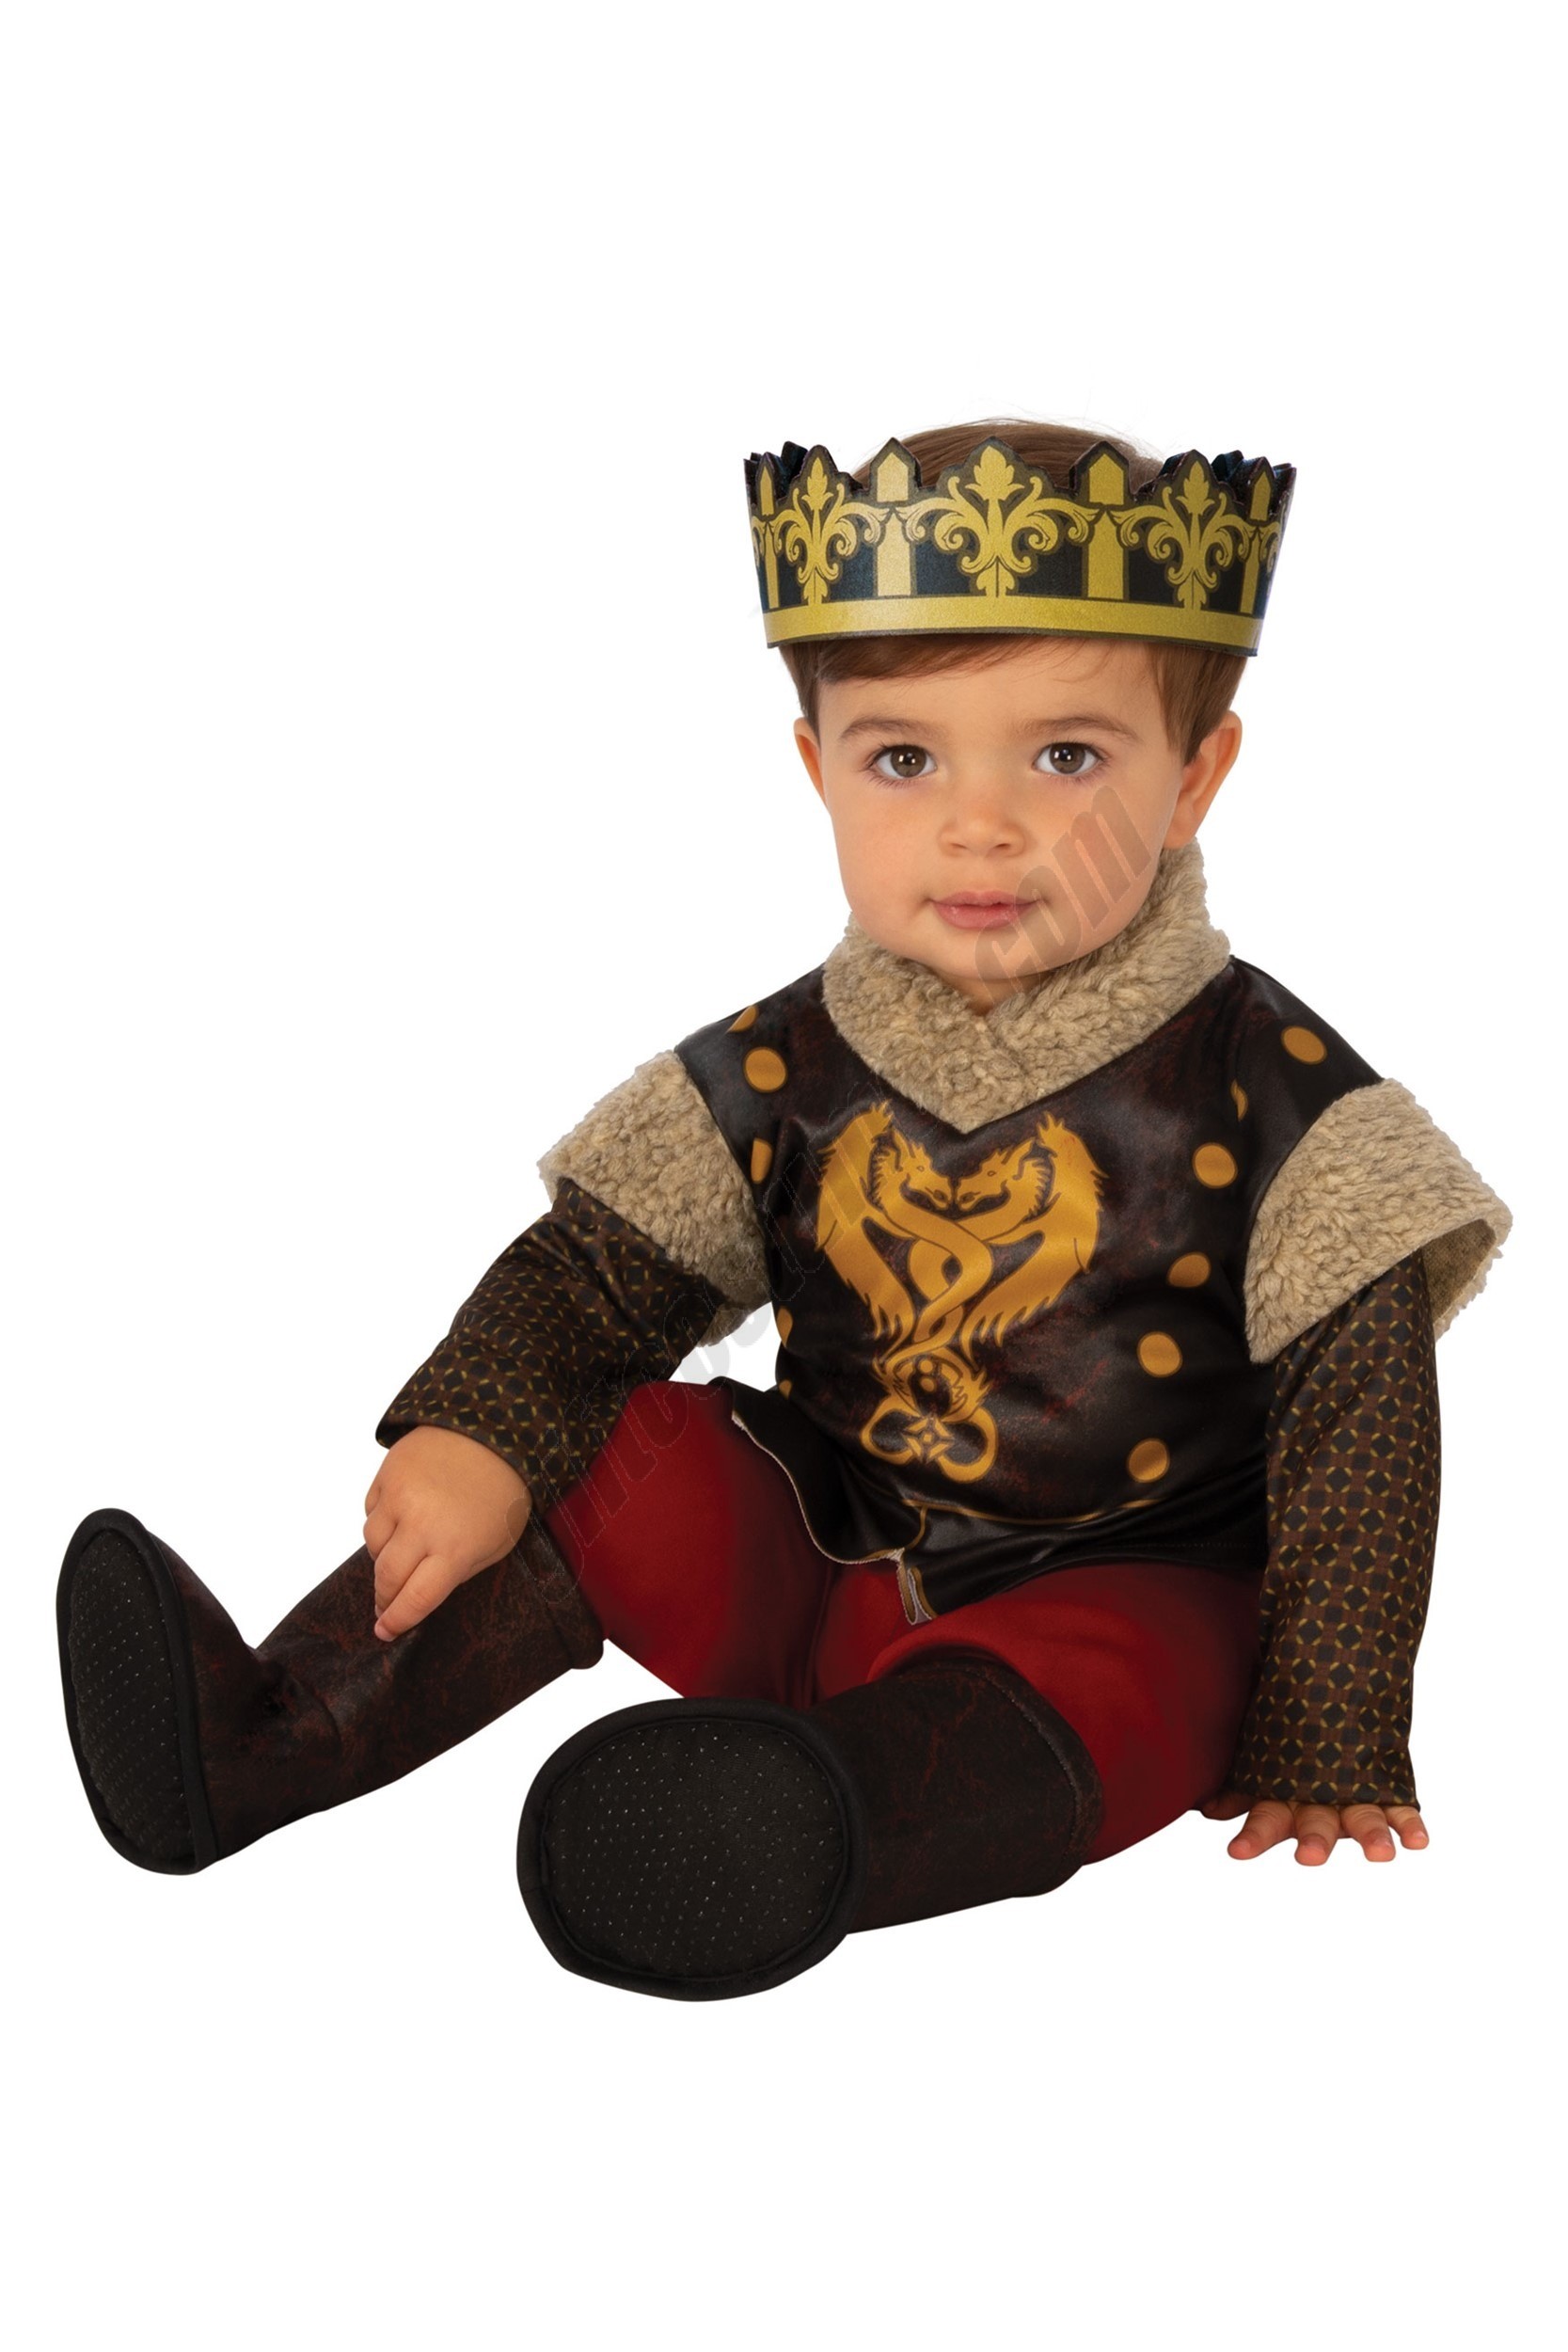 Infant / Toddler Medieval Prince Costume Promotions - Infant / Toddler Medieval Prince Costume Promotions